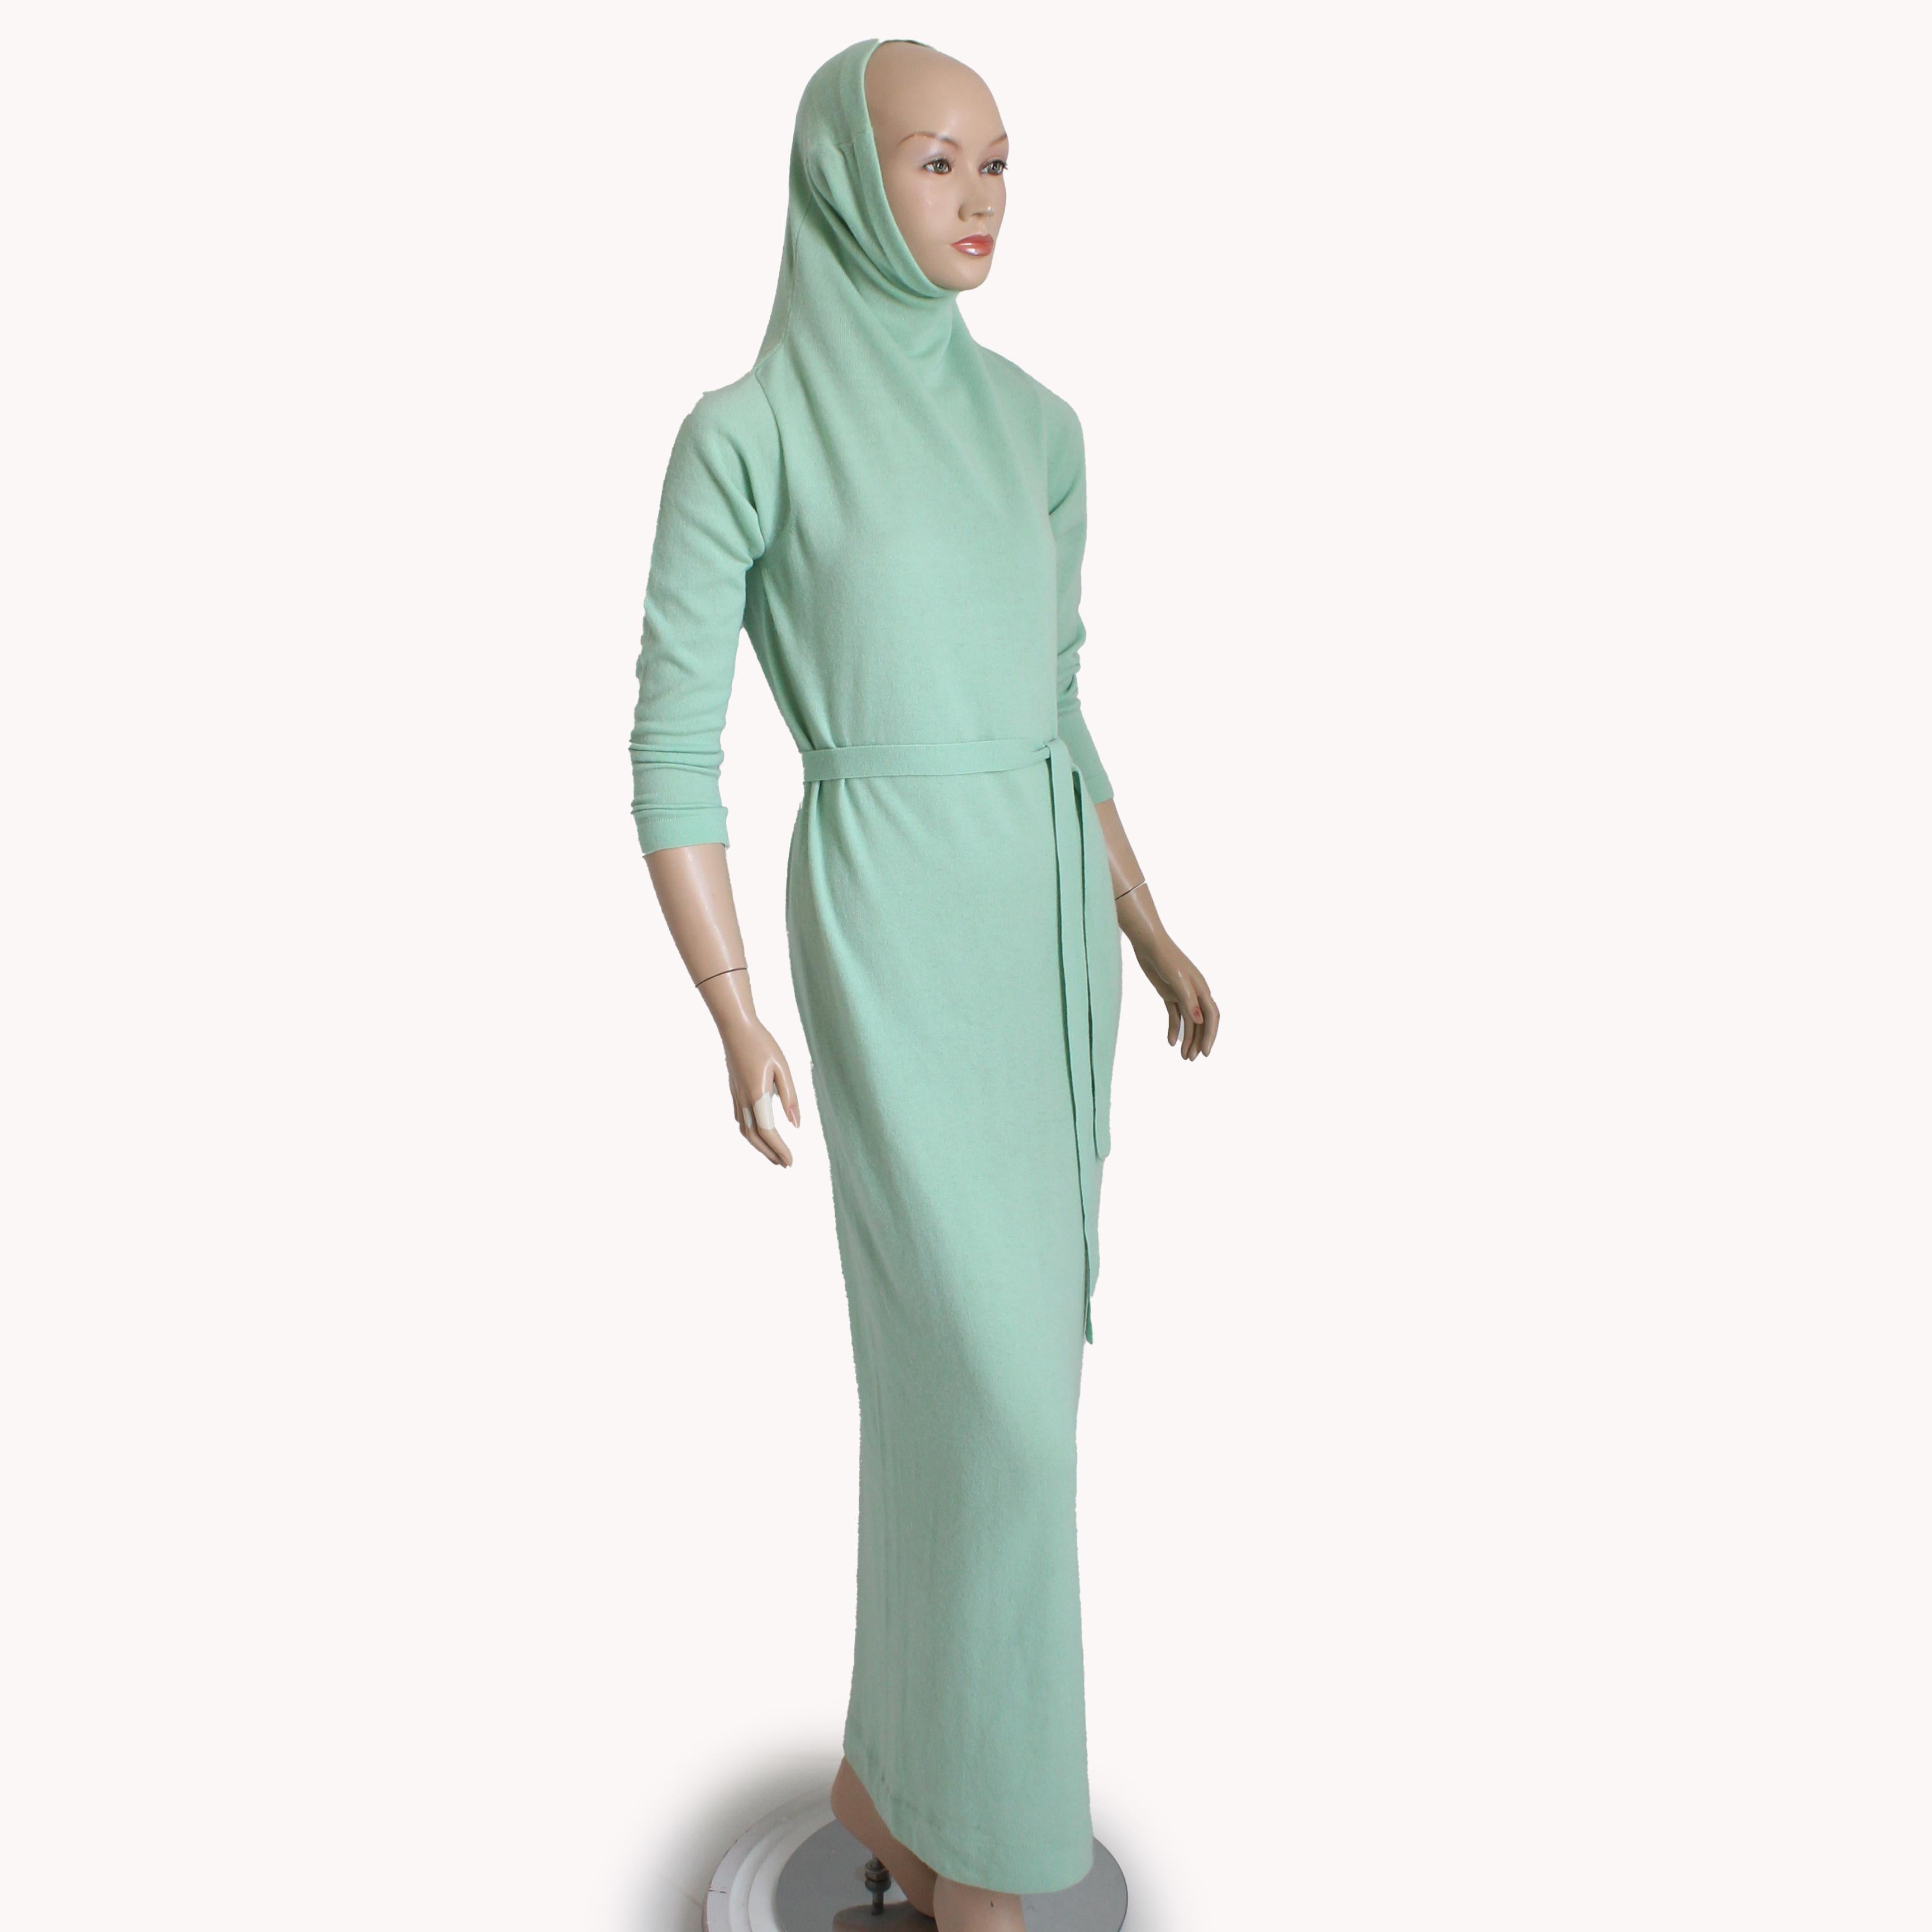 Robe longue ceinturée vintage Bonnie Cashin d'occasion, probablement fabriquée au milieu des années 70. Réalisée en tricot de cachemire souple d'un magnifique vert menthe, elle se glisse sur la tête, n'est pas doublée et est accompagnée de sa